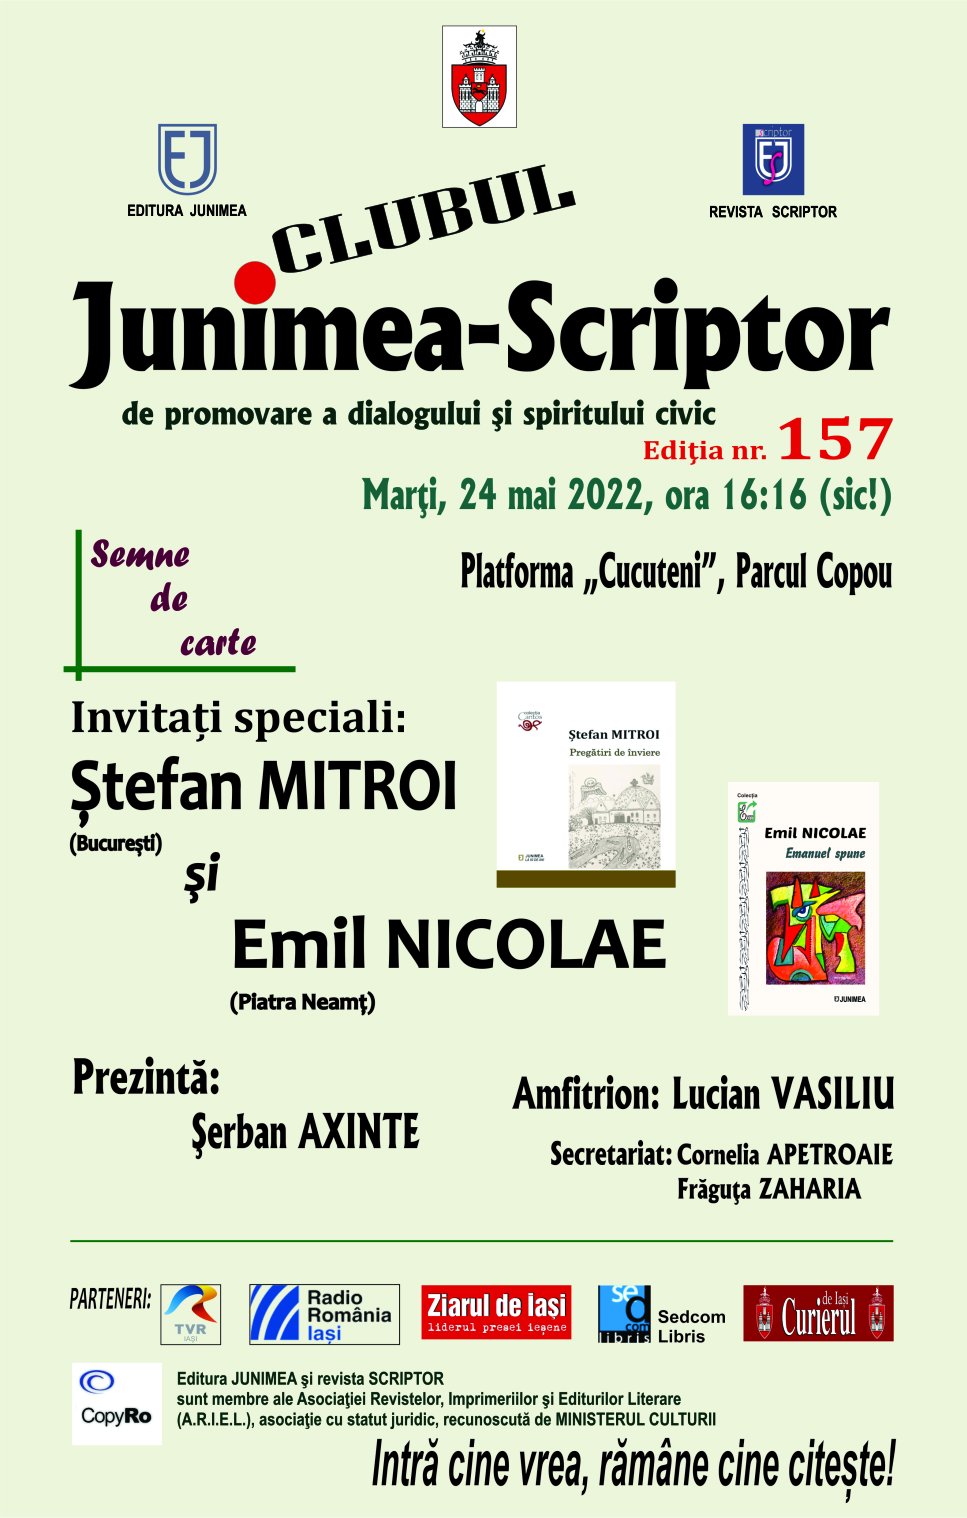  Editura JUNIMEA şi revista SCRIPTOR invită publicul marţi la un dialog cultural